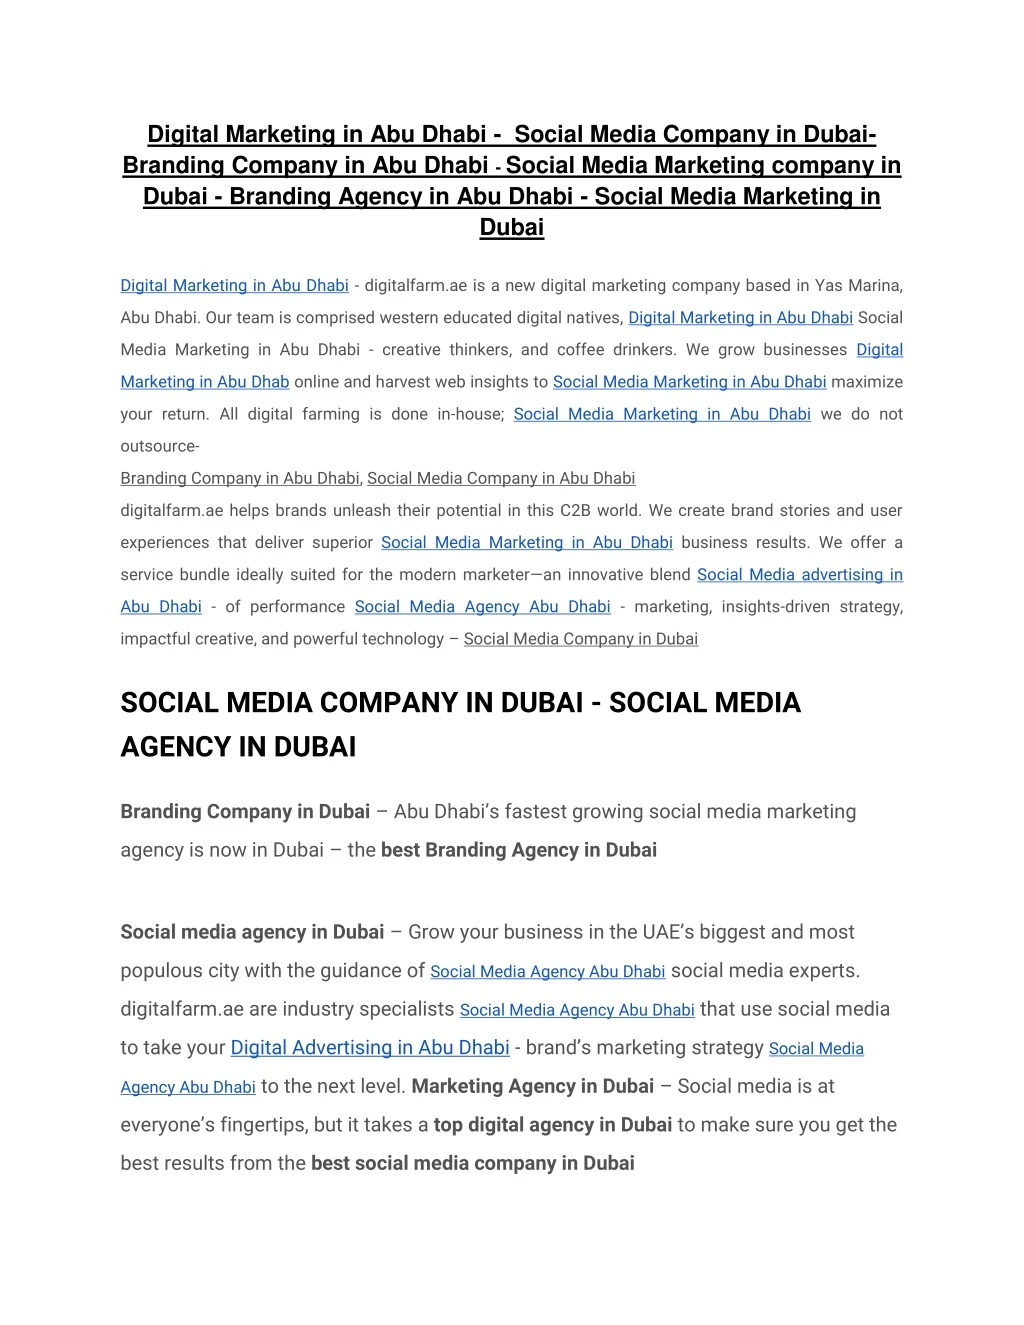 digital marketing in abu dhabi social media